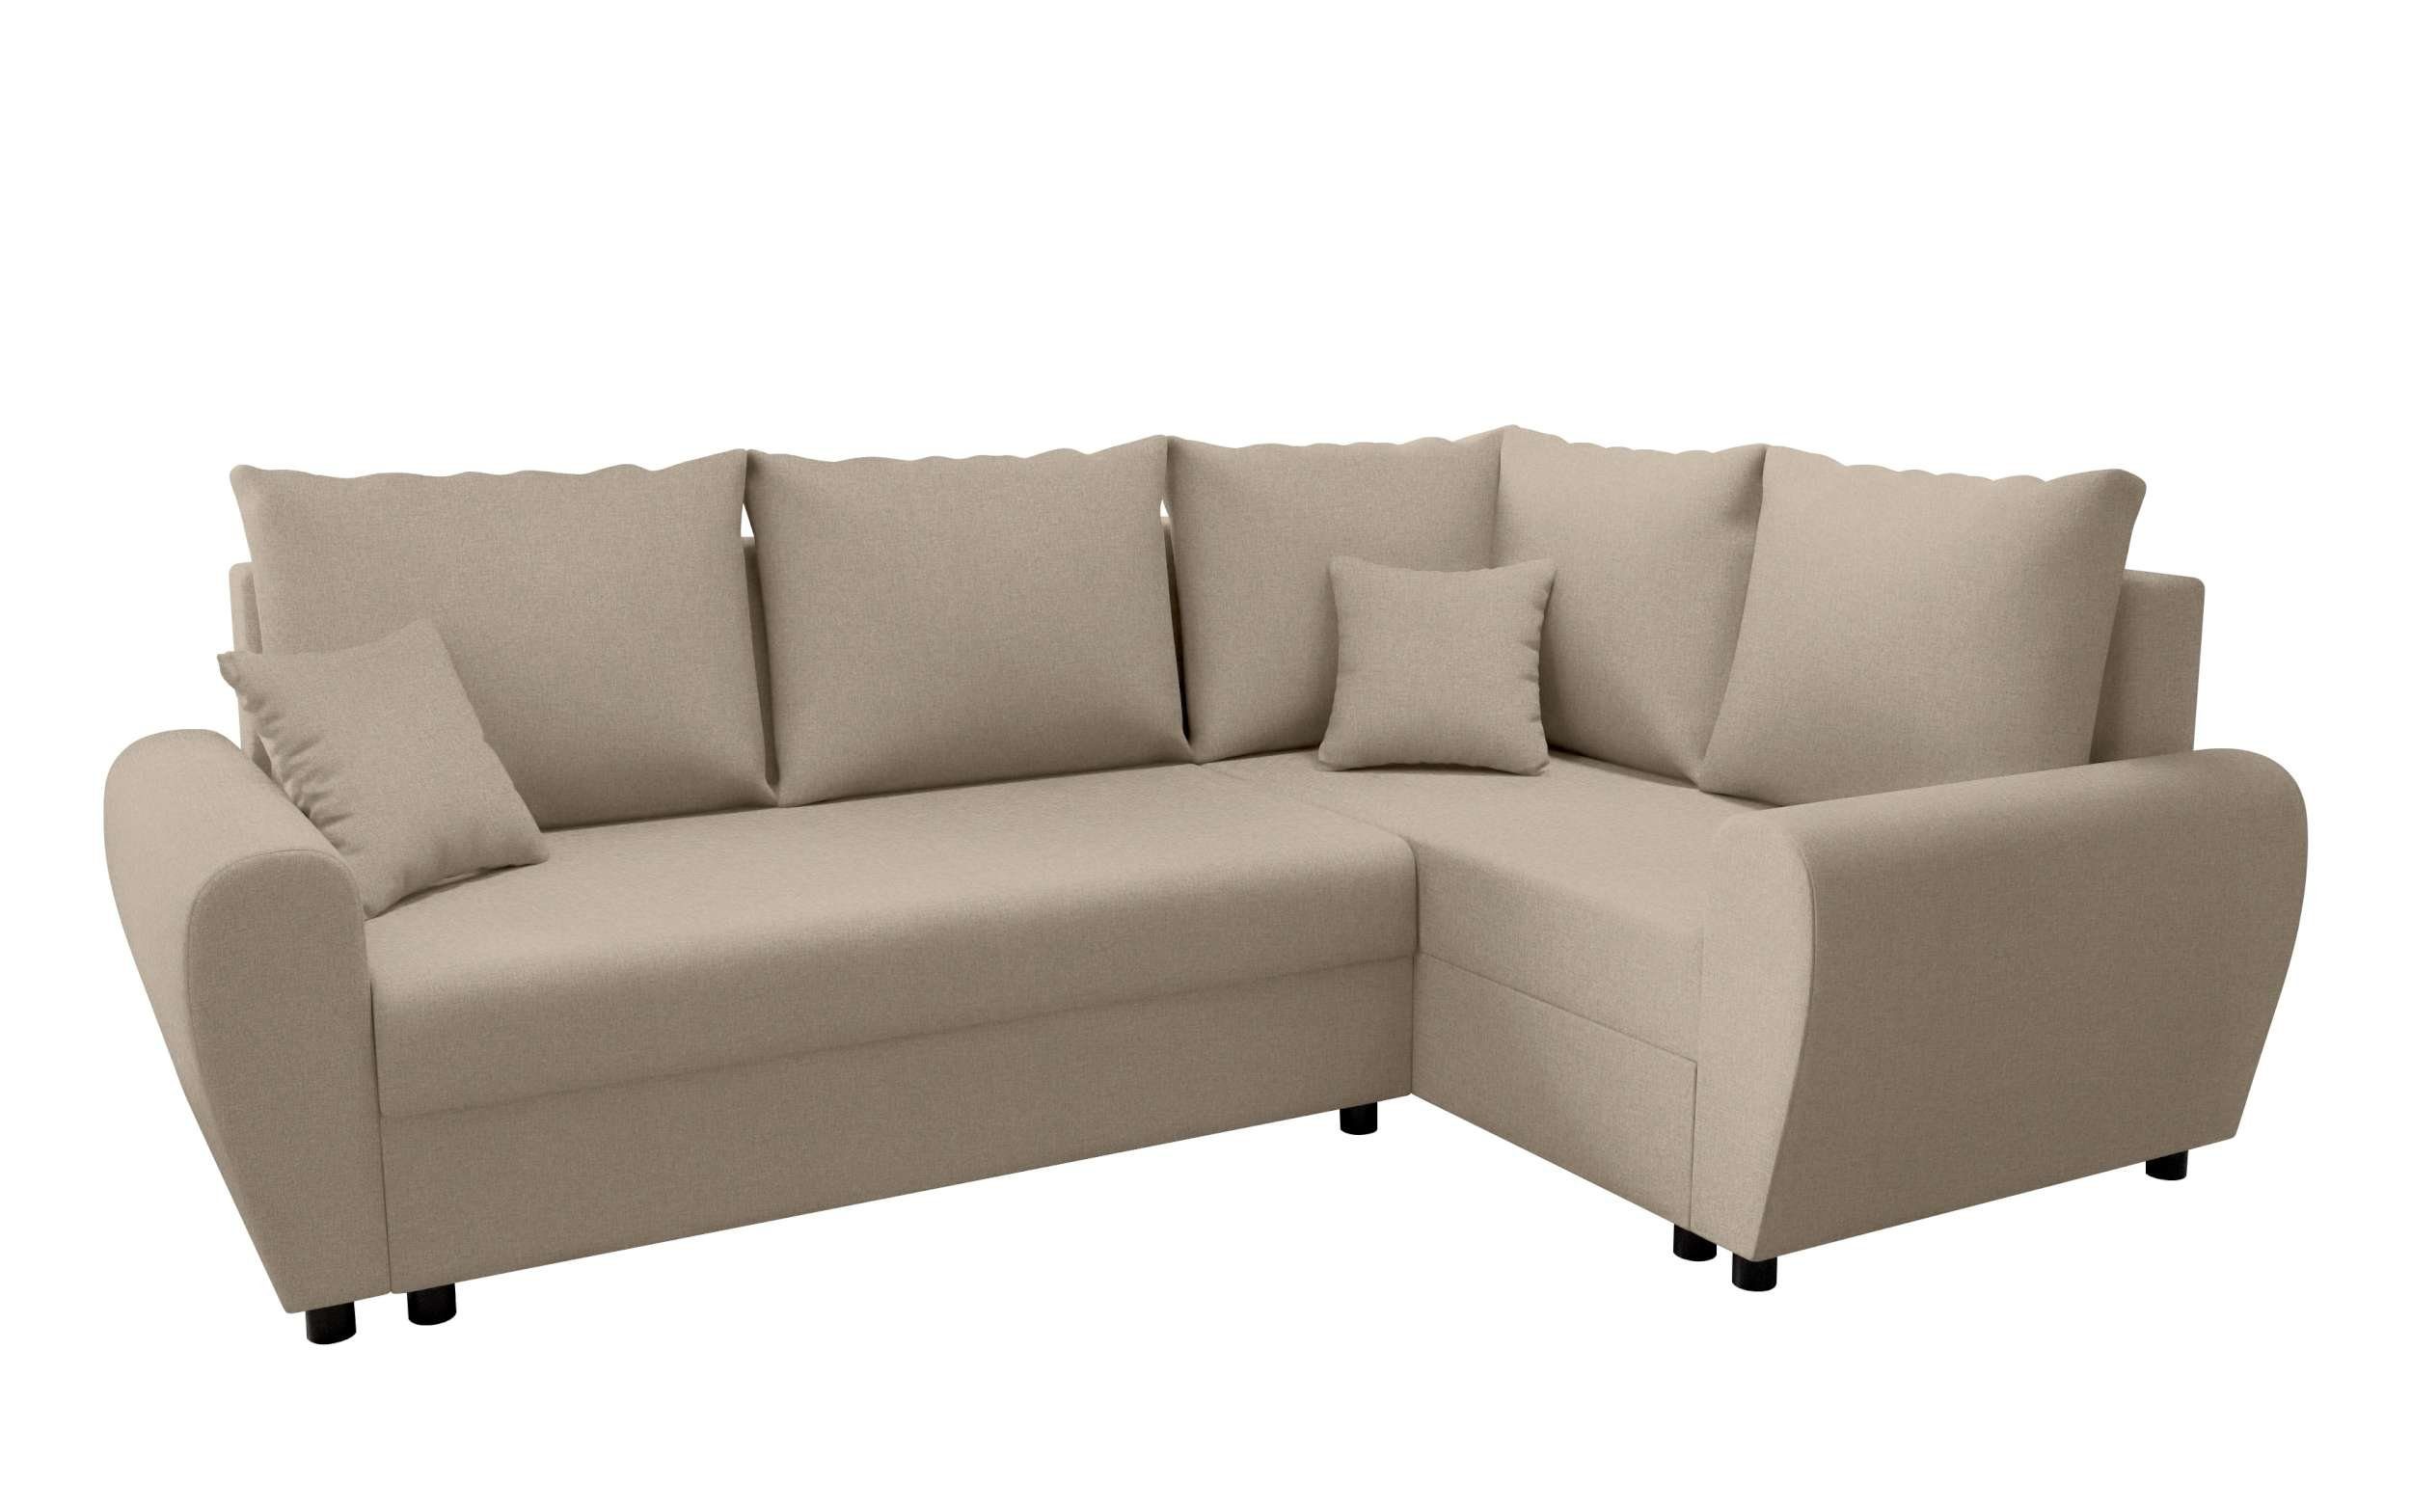 mit Bettfunktion, Sofa, Eckcouch, Design L-Form, mit Valence, Modern Ecksofa Sitzkomfort, Stylefy Bettkasten,